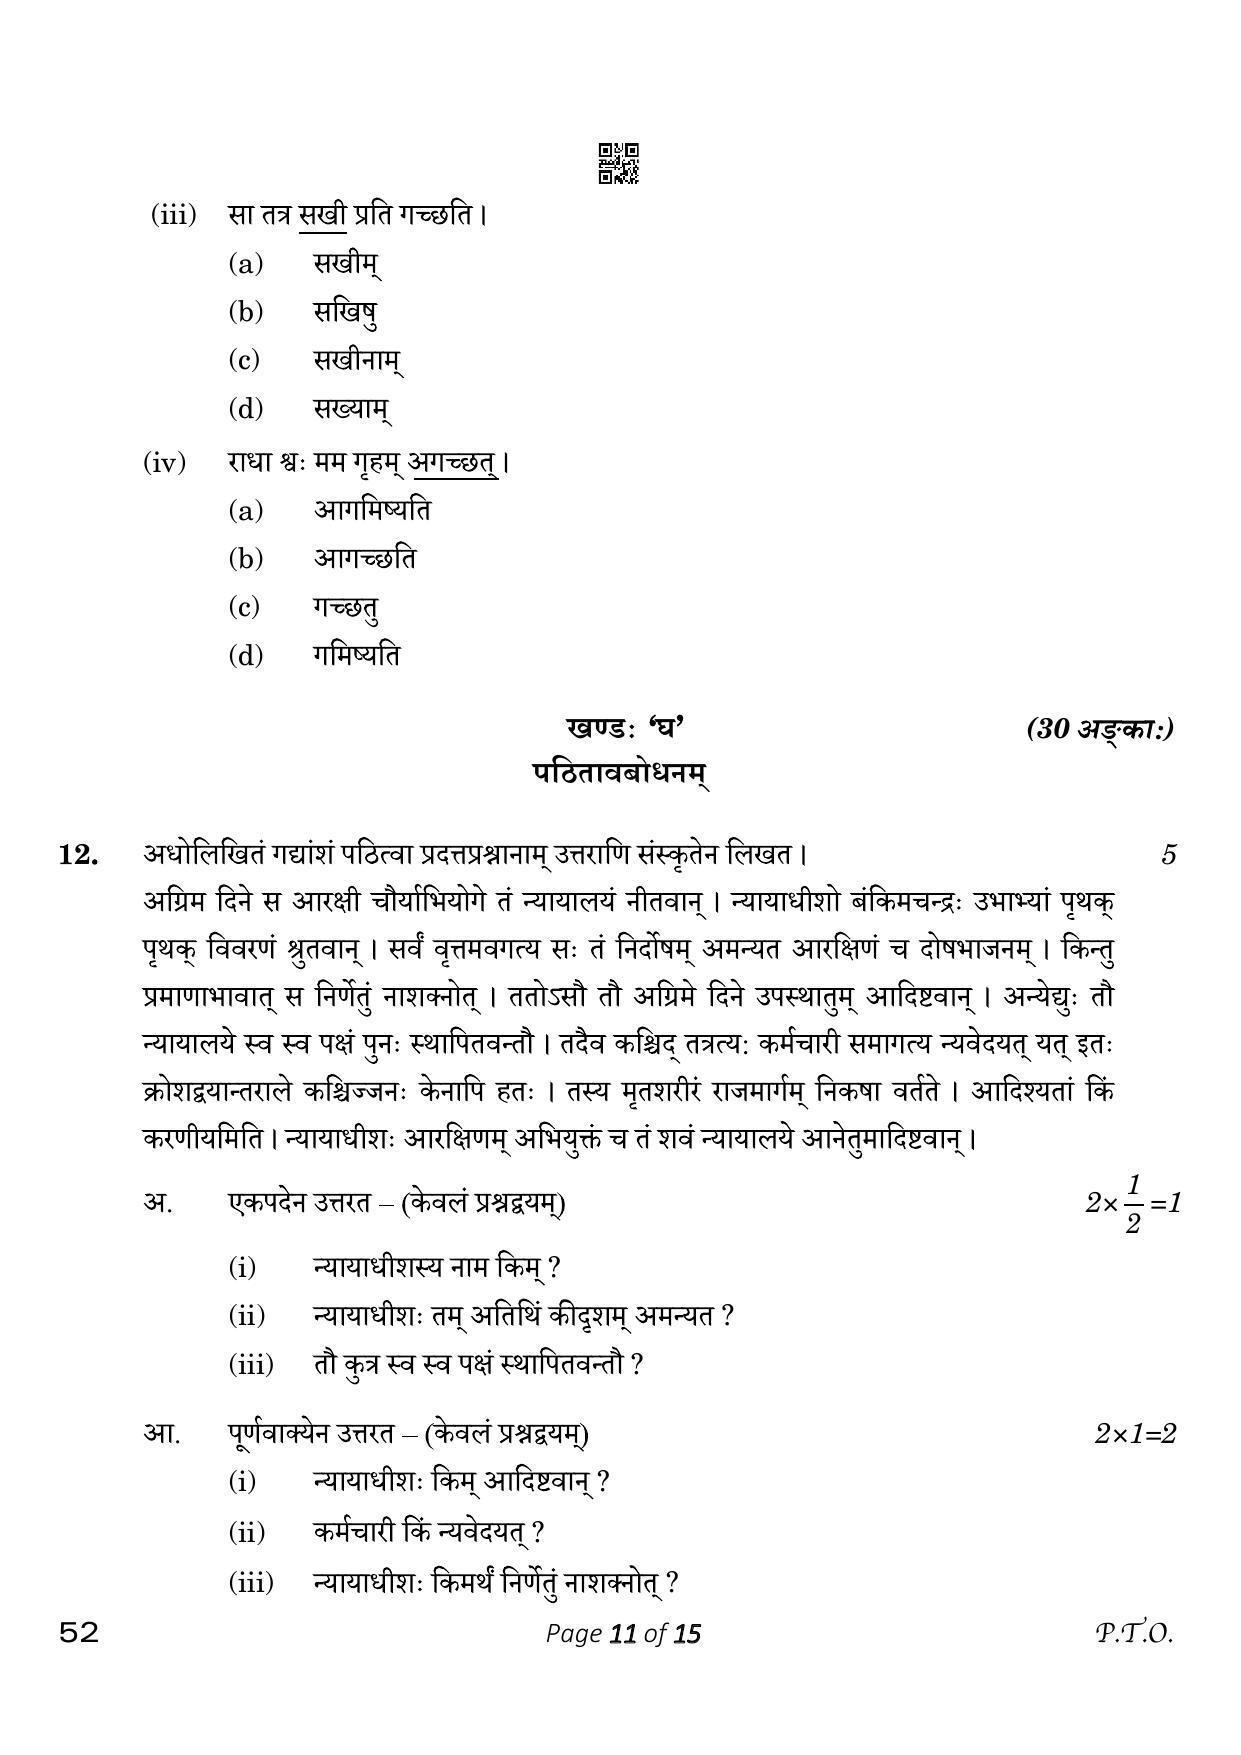 CBSE Class 10 Sanskrit (Compartment) 2023 Question Paper - Page 11